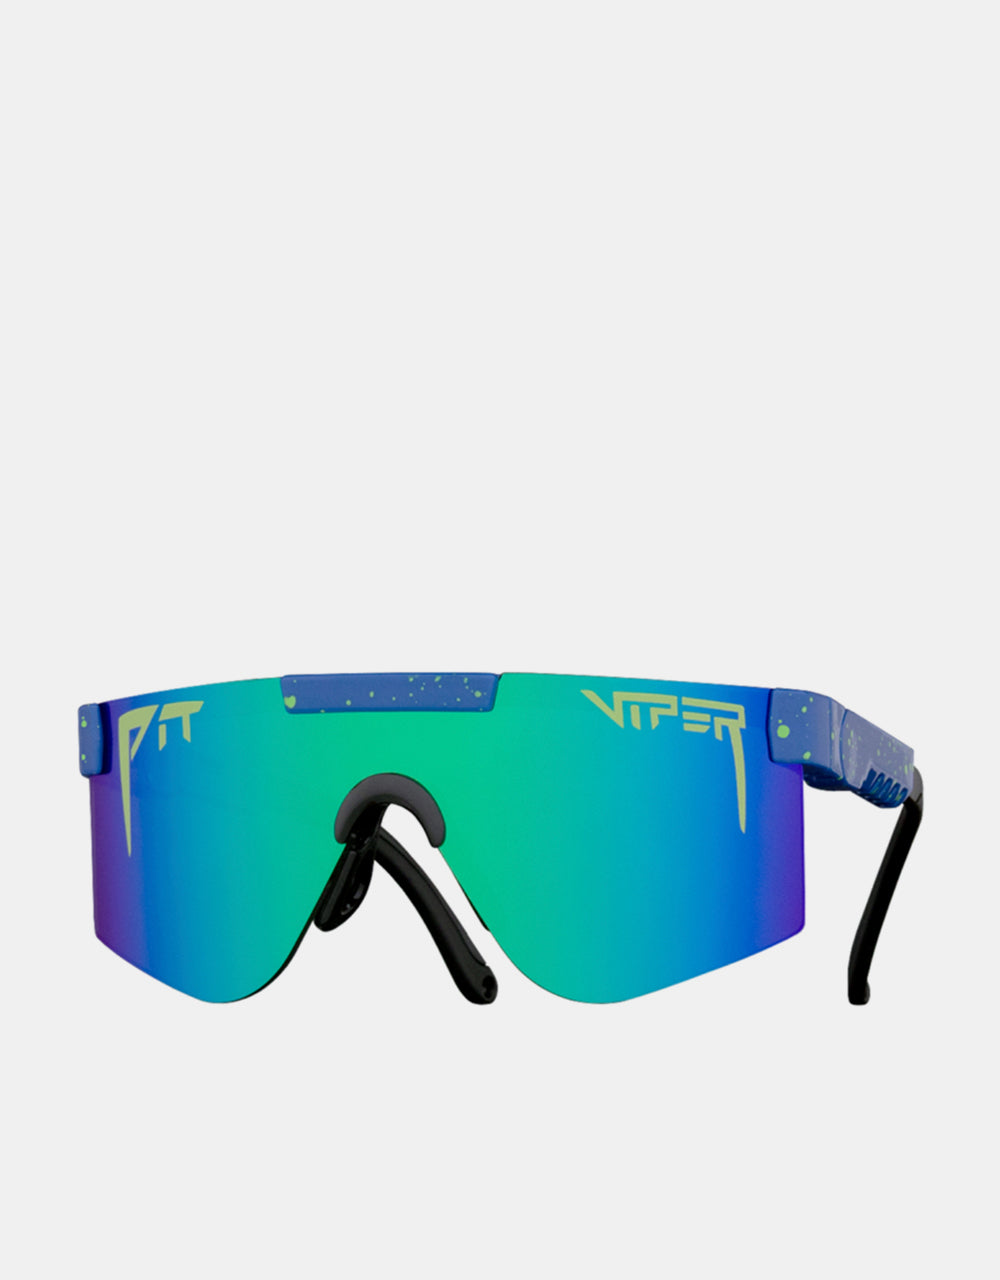 Pit Viper Leonardo XS Kids Sunglasses - Green Revo Mirror